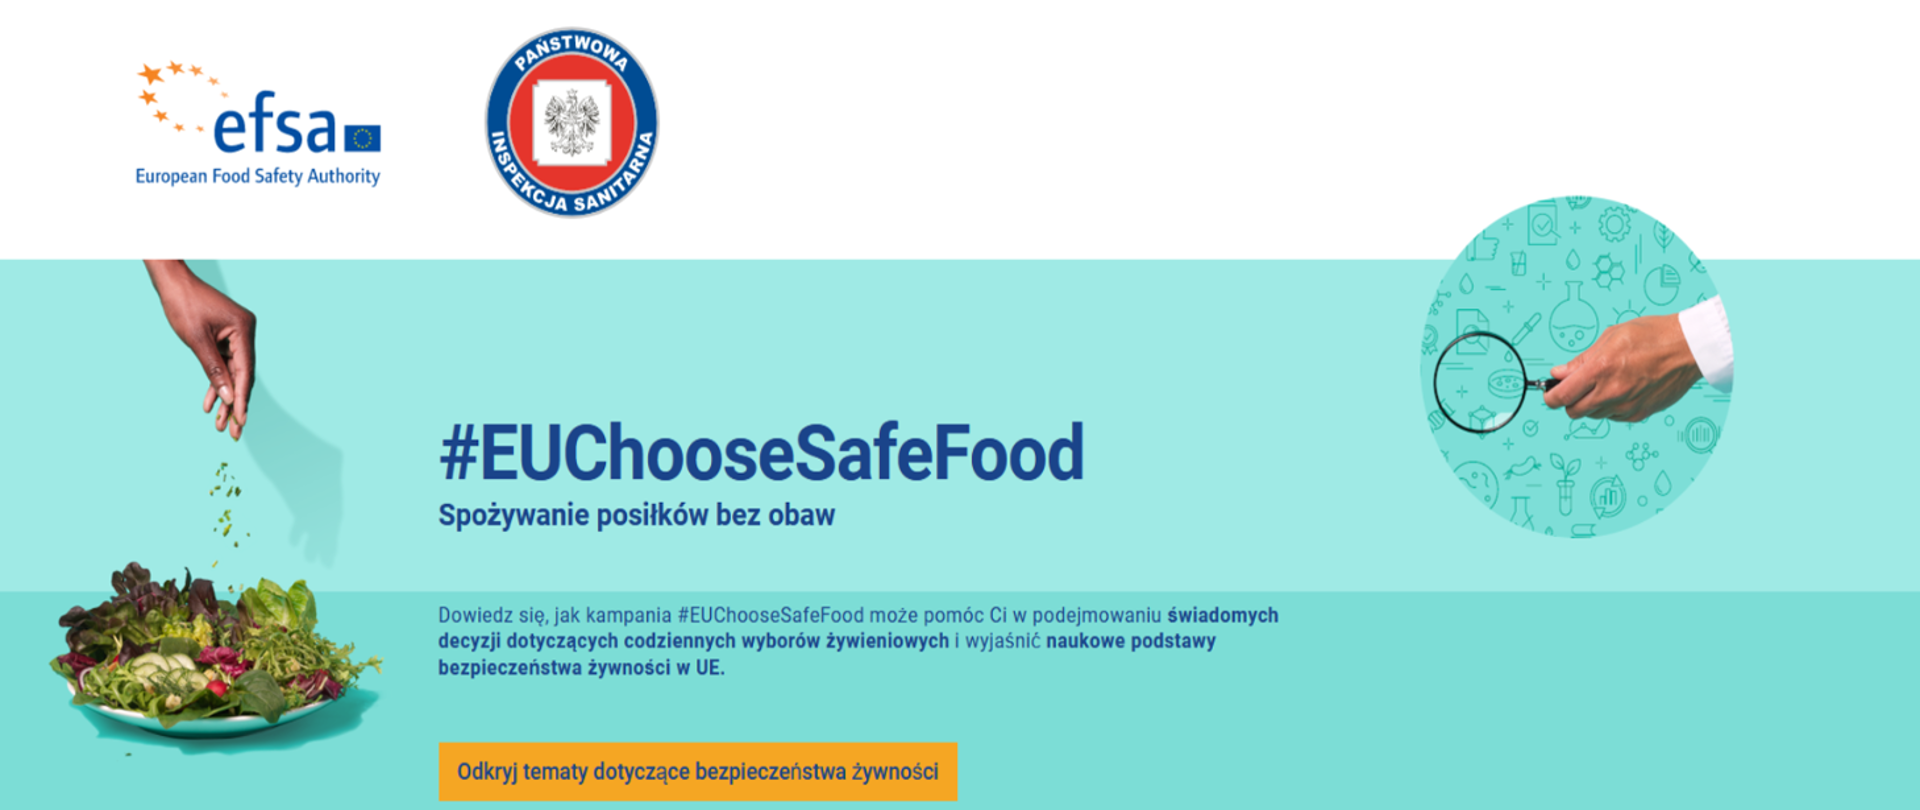 Bezpieczna żywność EFSA